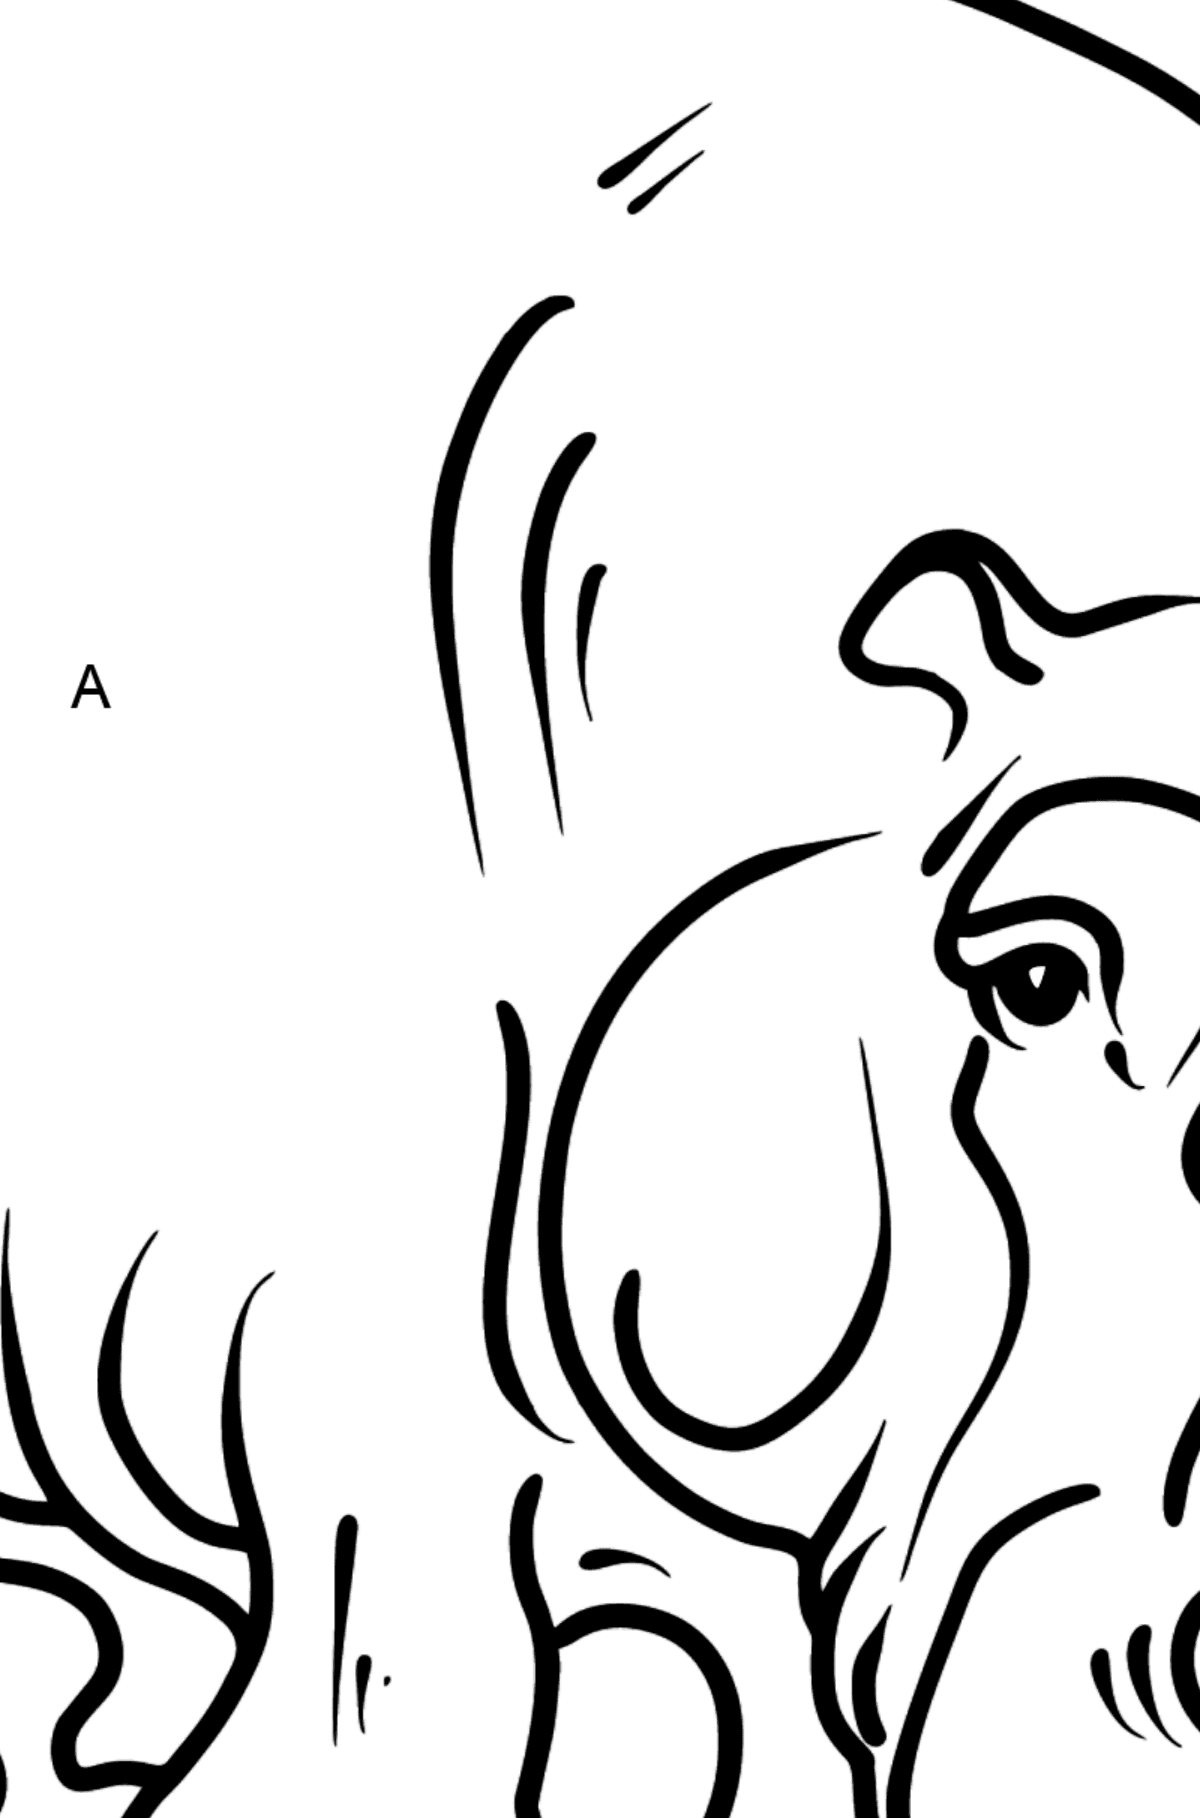 Dibujo de hipopótamo para colorear - Colorear por Letras para Niños